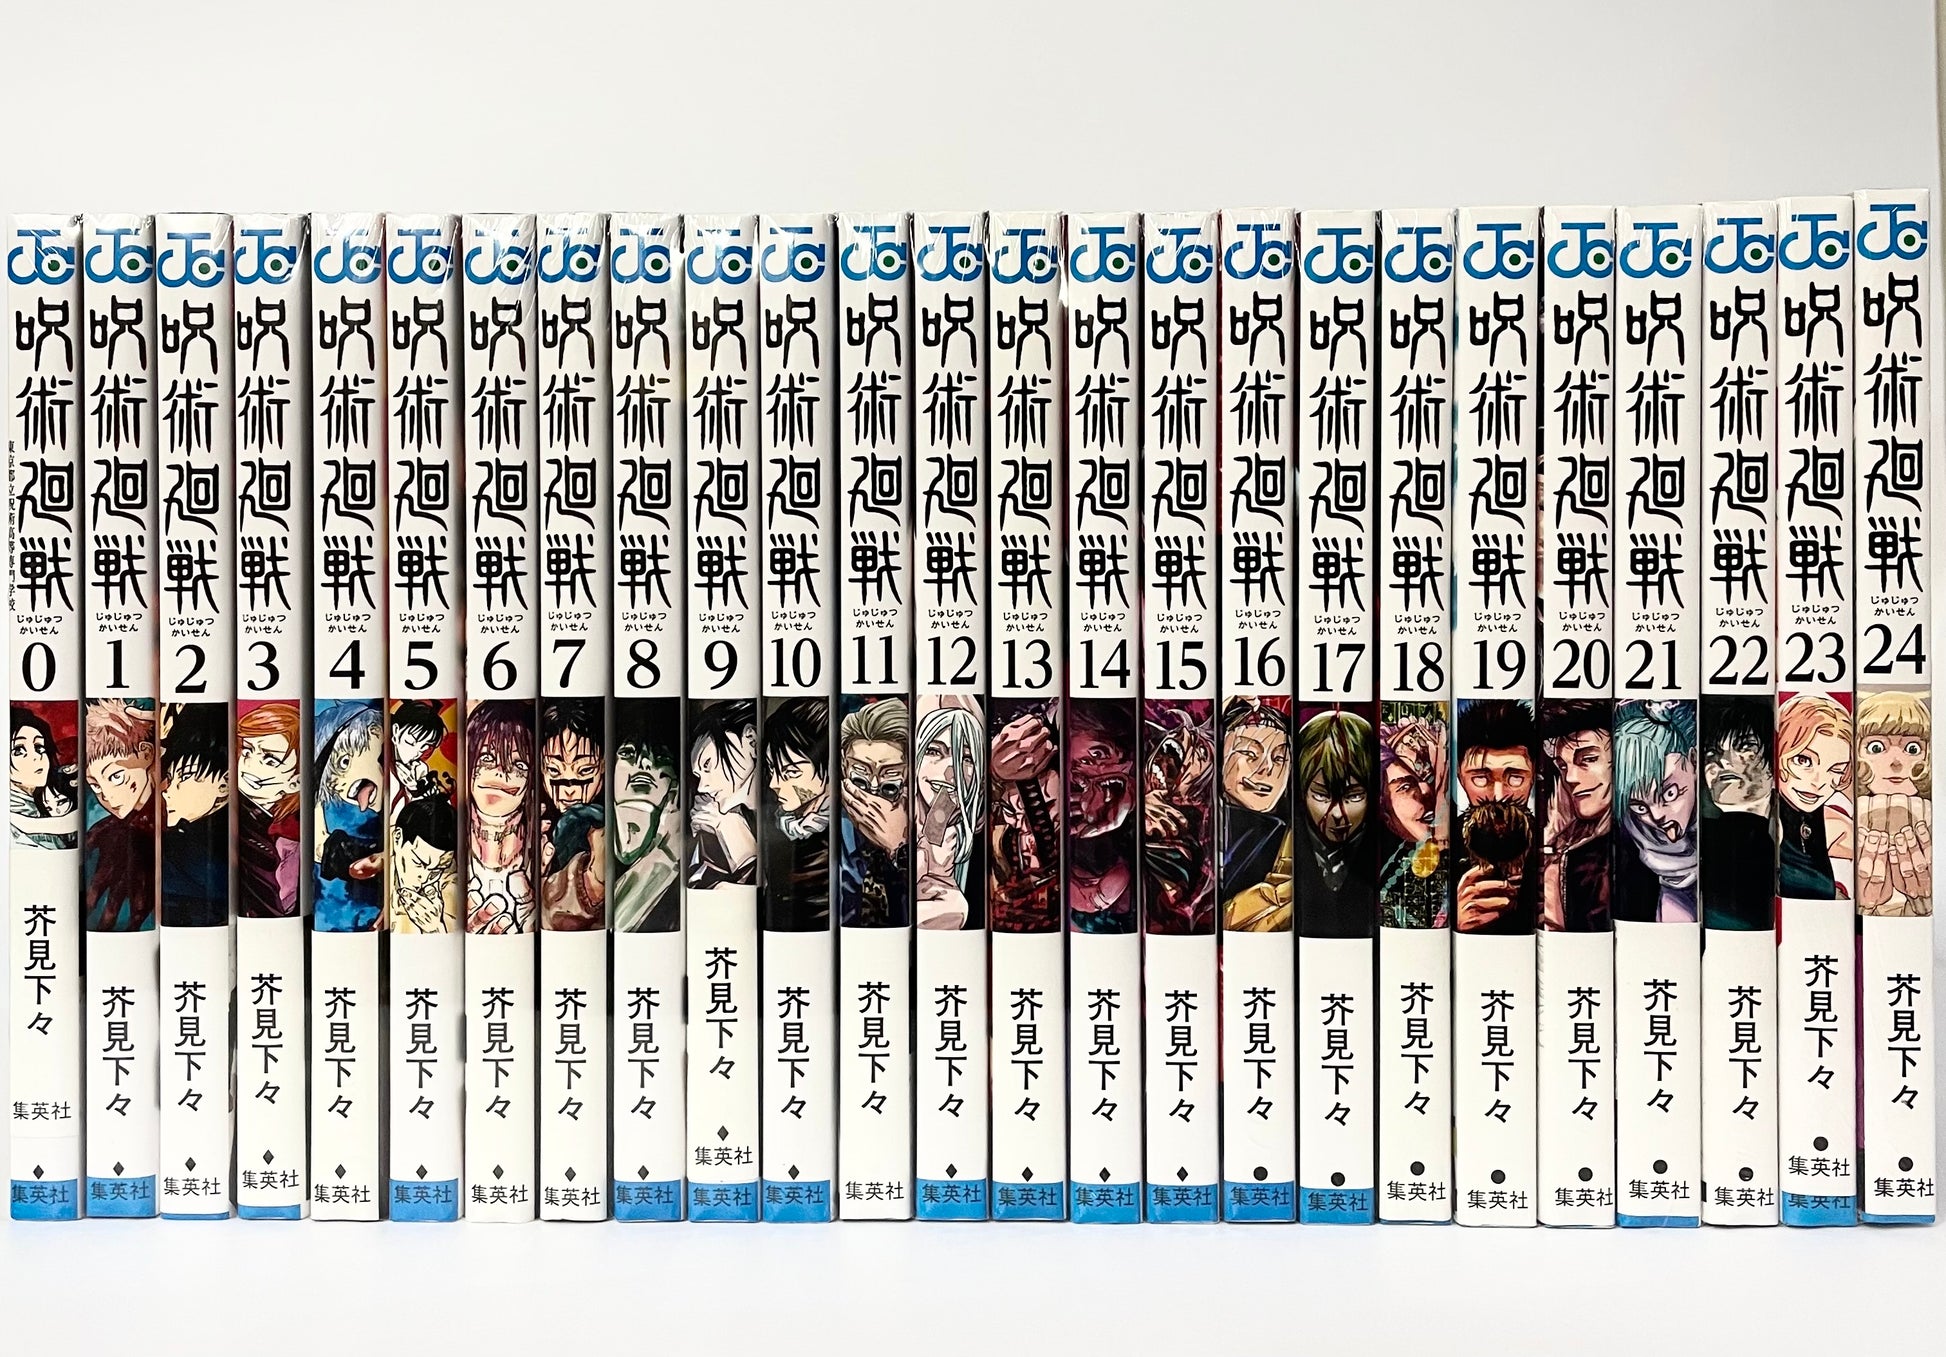 Jujutsu Kaisen Vol.0-22 Japanese comic Manga book Set Gege Akutami Japan